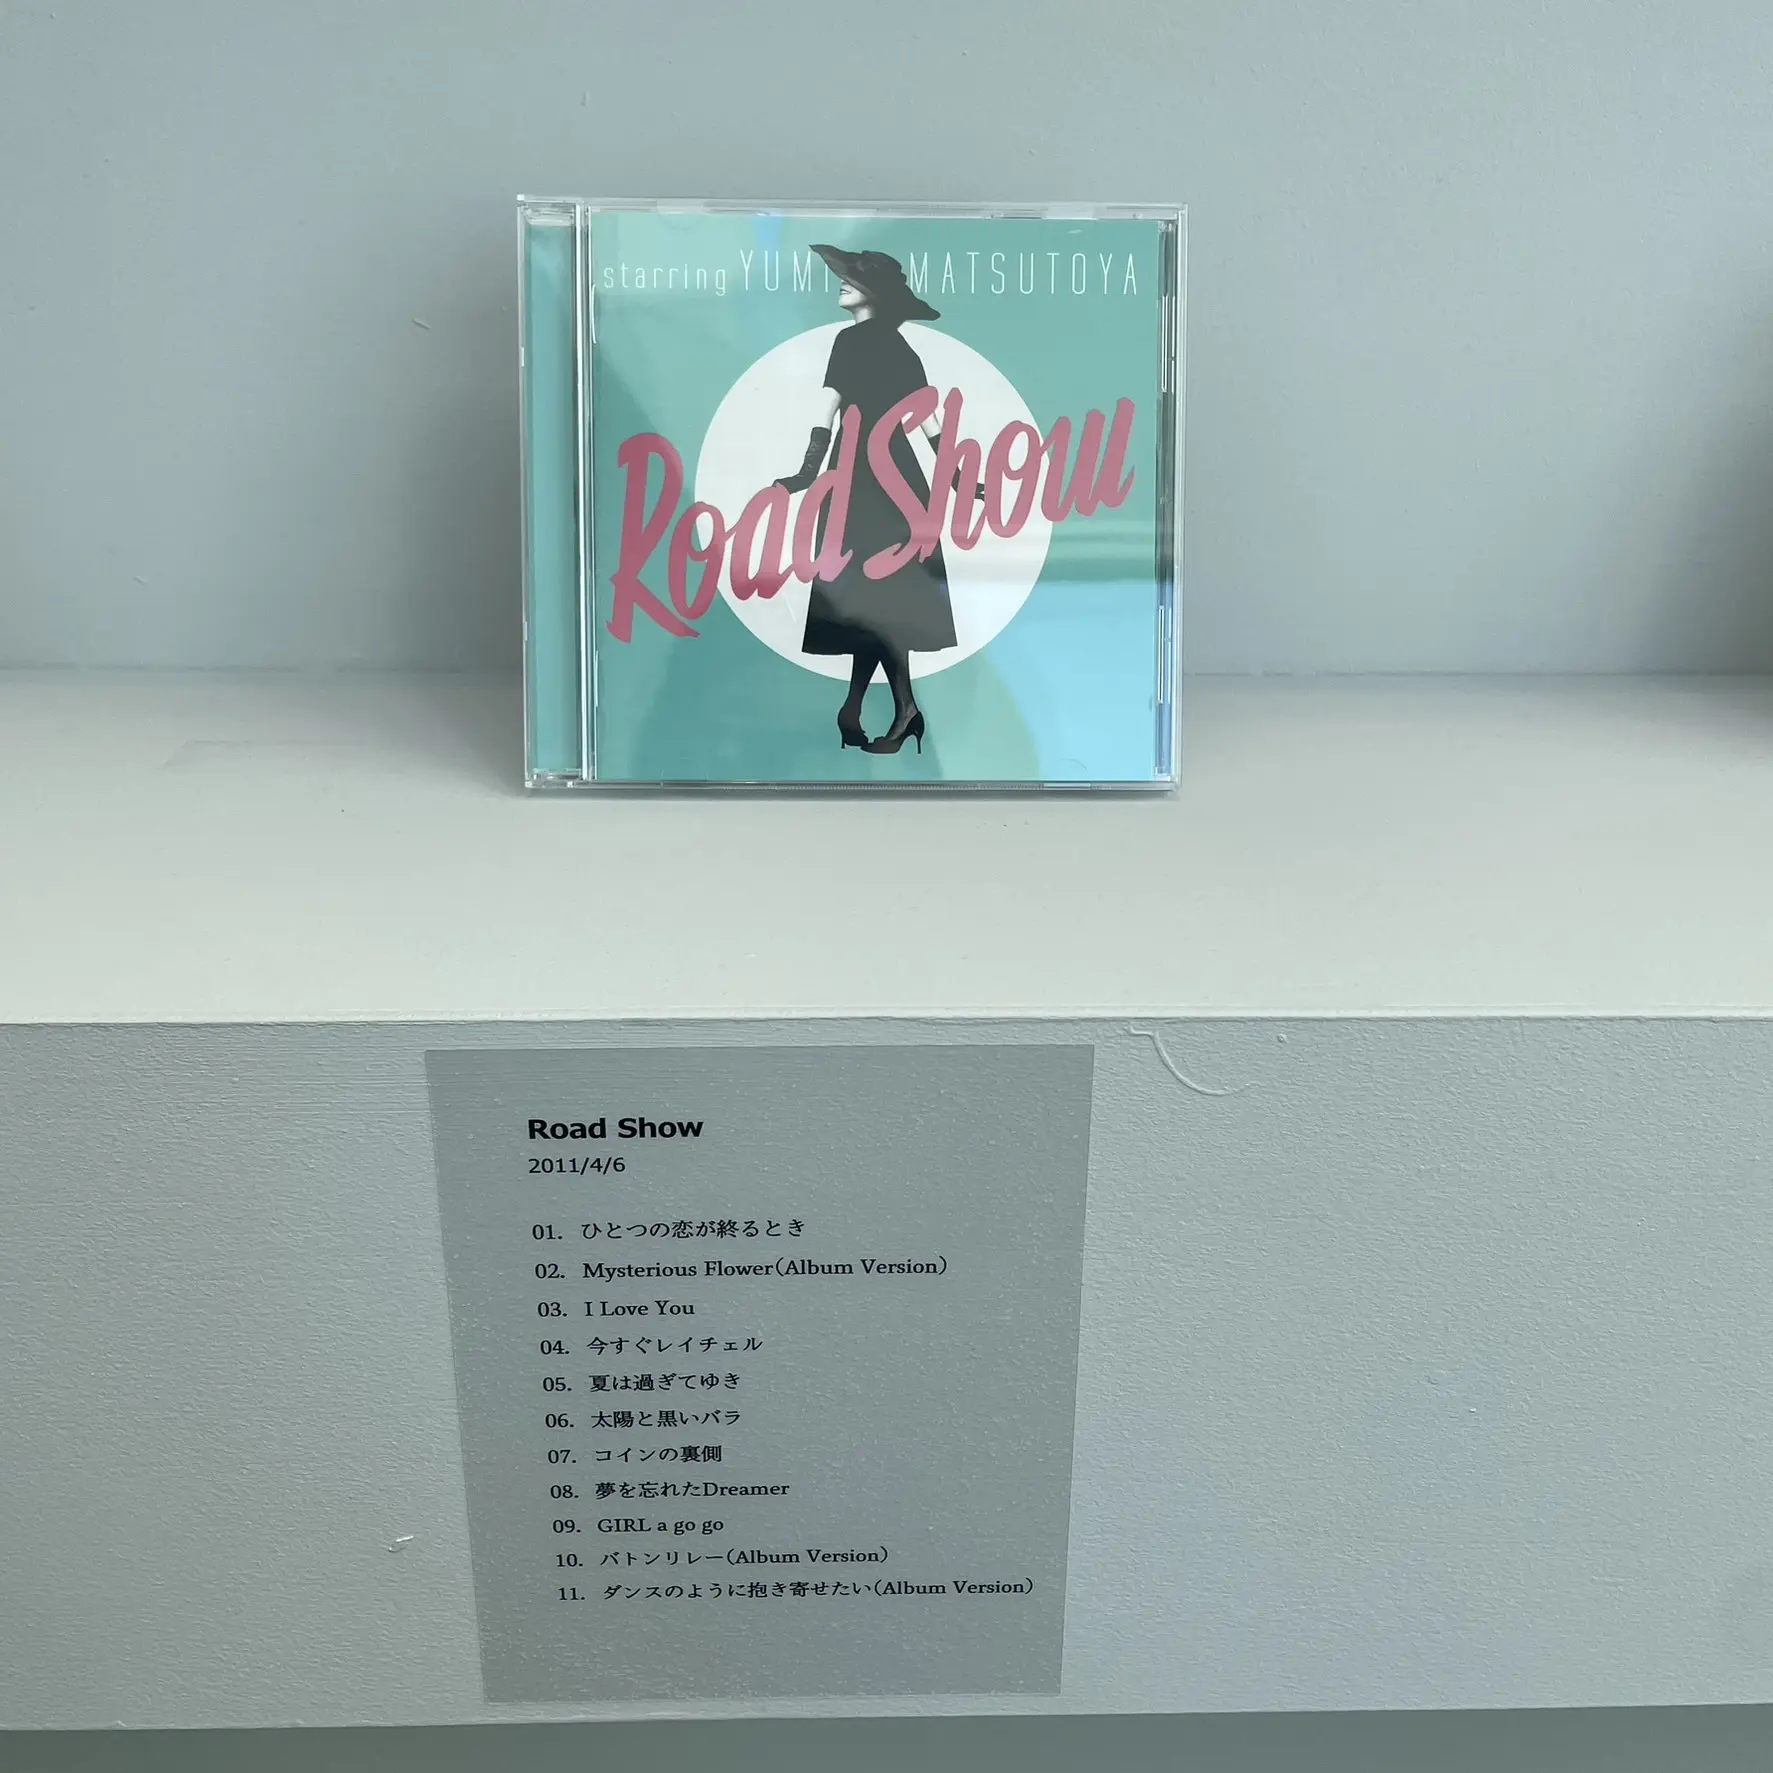 ユーミンの展覧会「YUMING MUSEUM」デビューアルバム「返事はいらない」からこれまで39枚のアルバムの展示